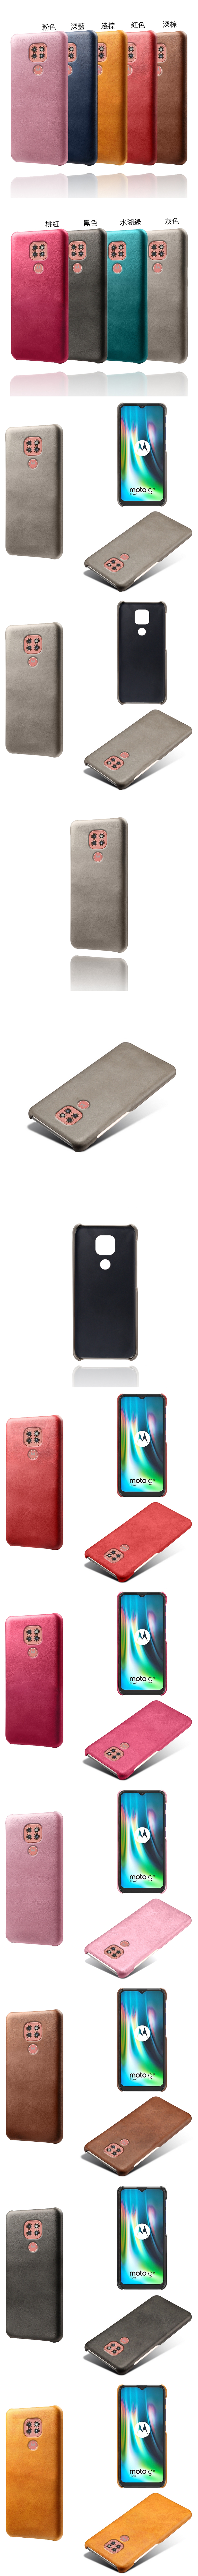 Motorola Moto G9 Play 皮革保護殼(PLAIN) - 牛皮仿真皮紋單色背蓋素色多色手機殼保護套手機套